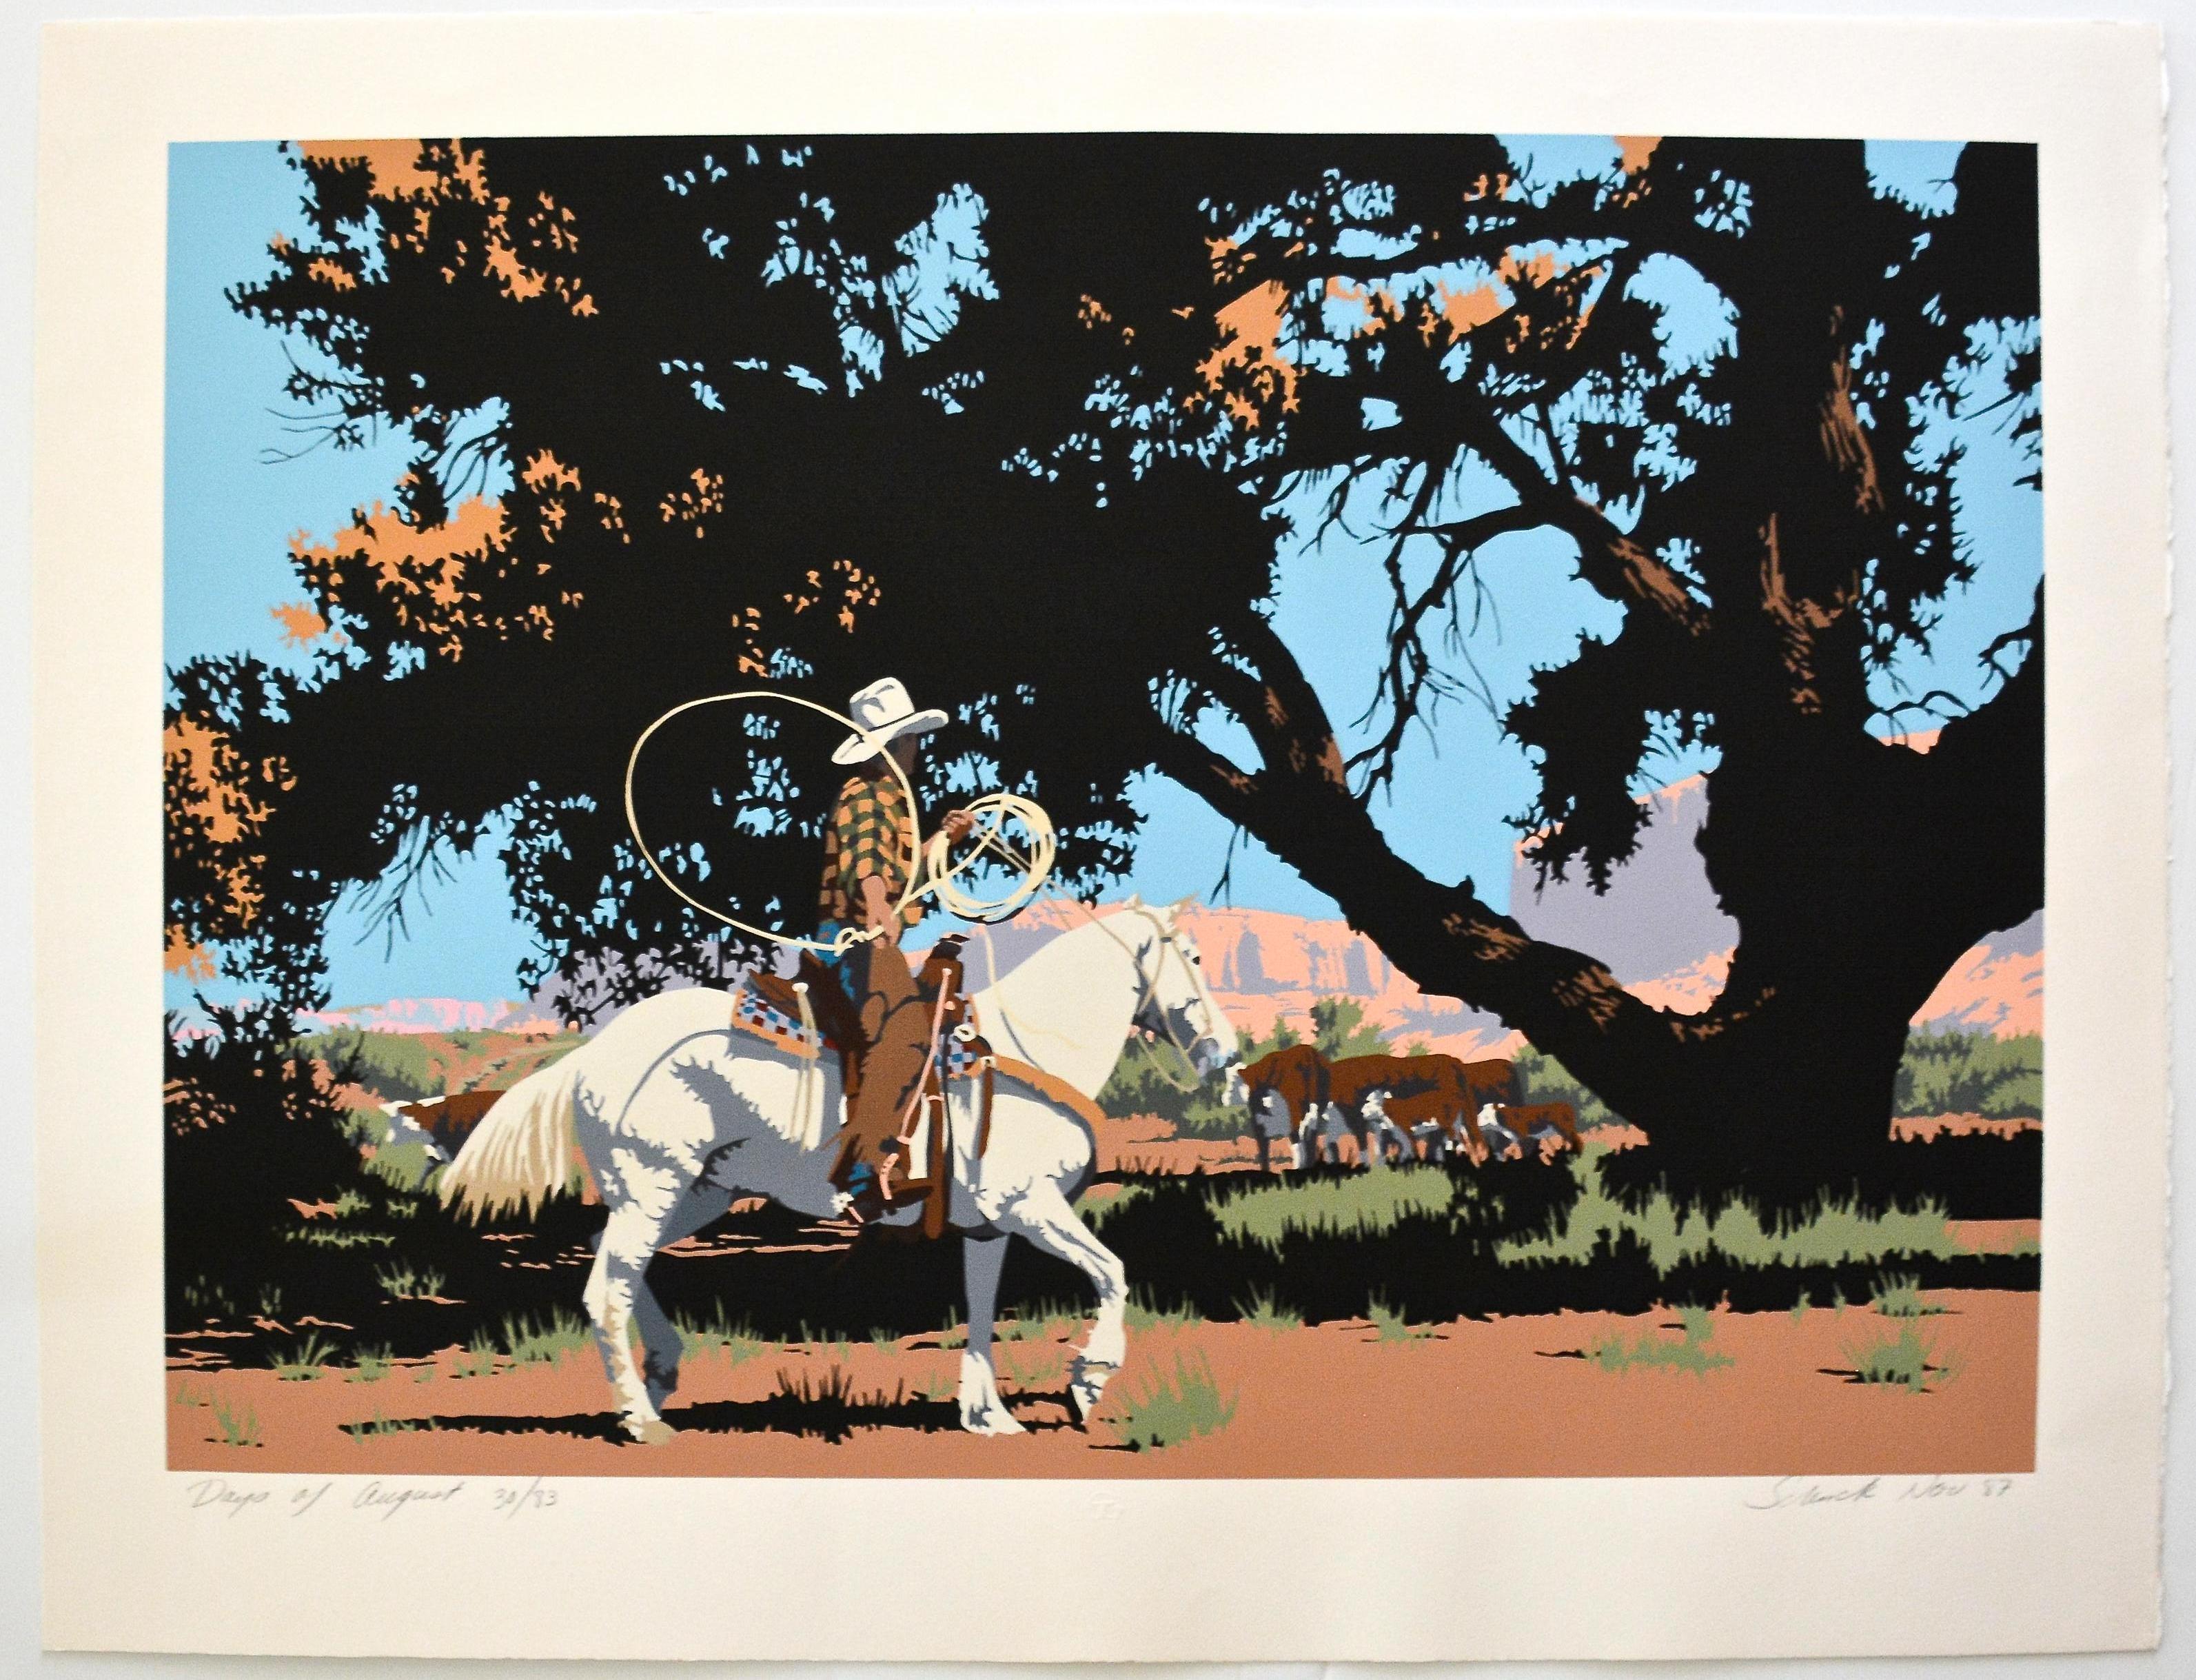 Billy Schenck Landscape Print - Bill Schenck, "Days Of August" Serigraph, 20/83, 1987